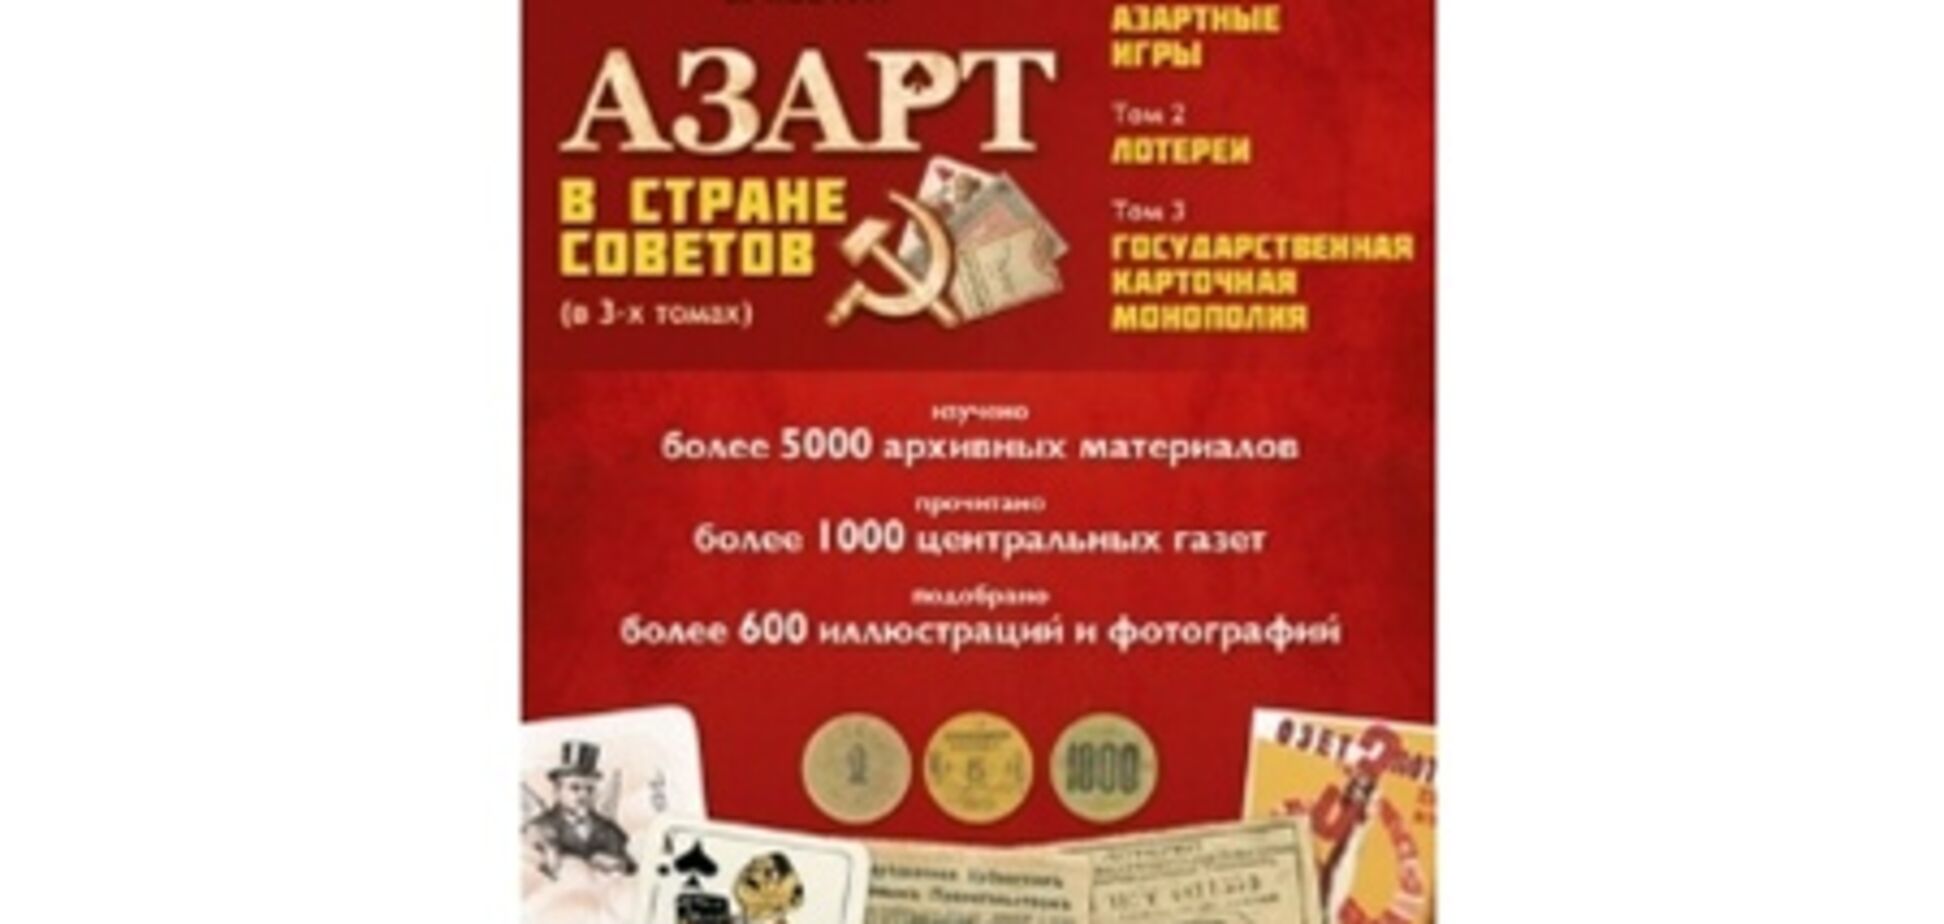 'Азарт в Країні Рад' - все про історію азартних ігор і лотерей в СРСР